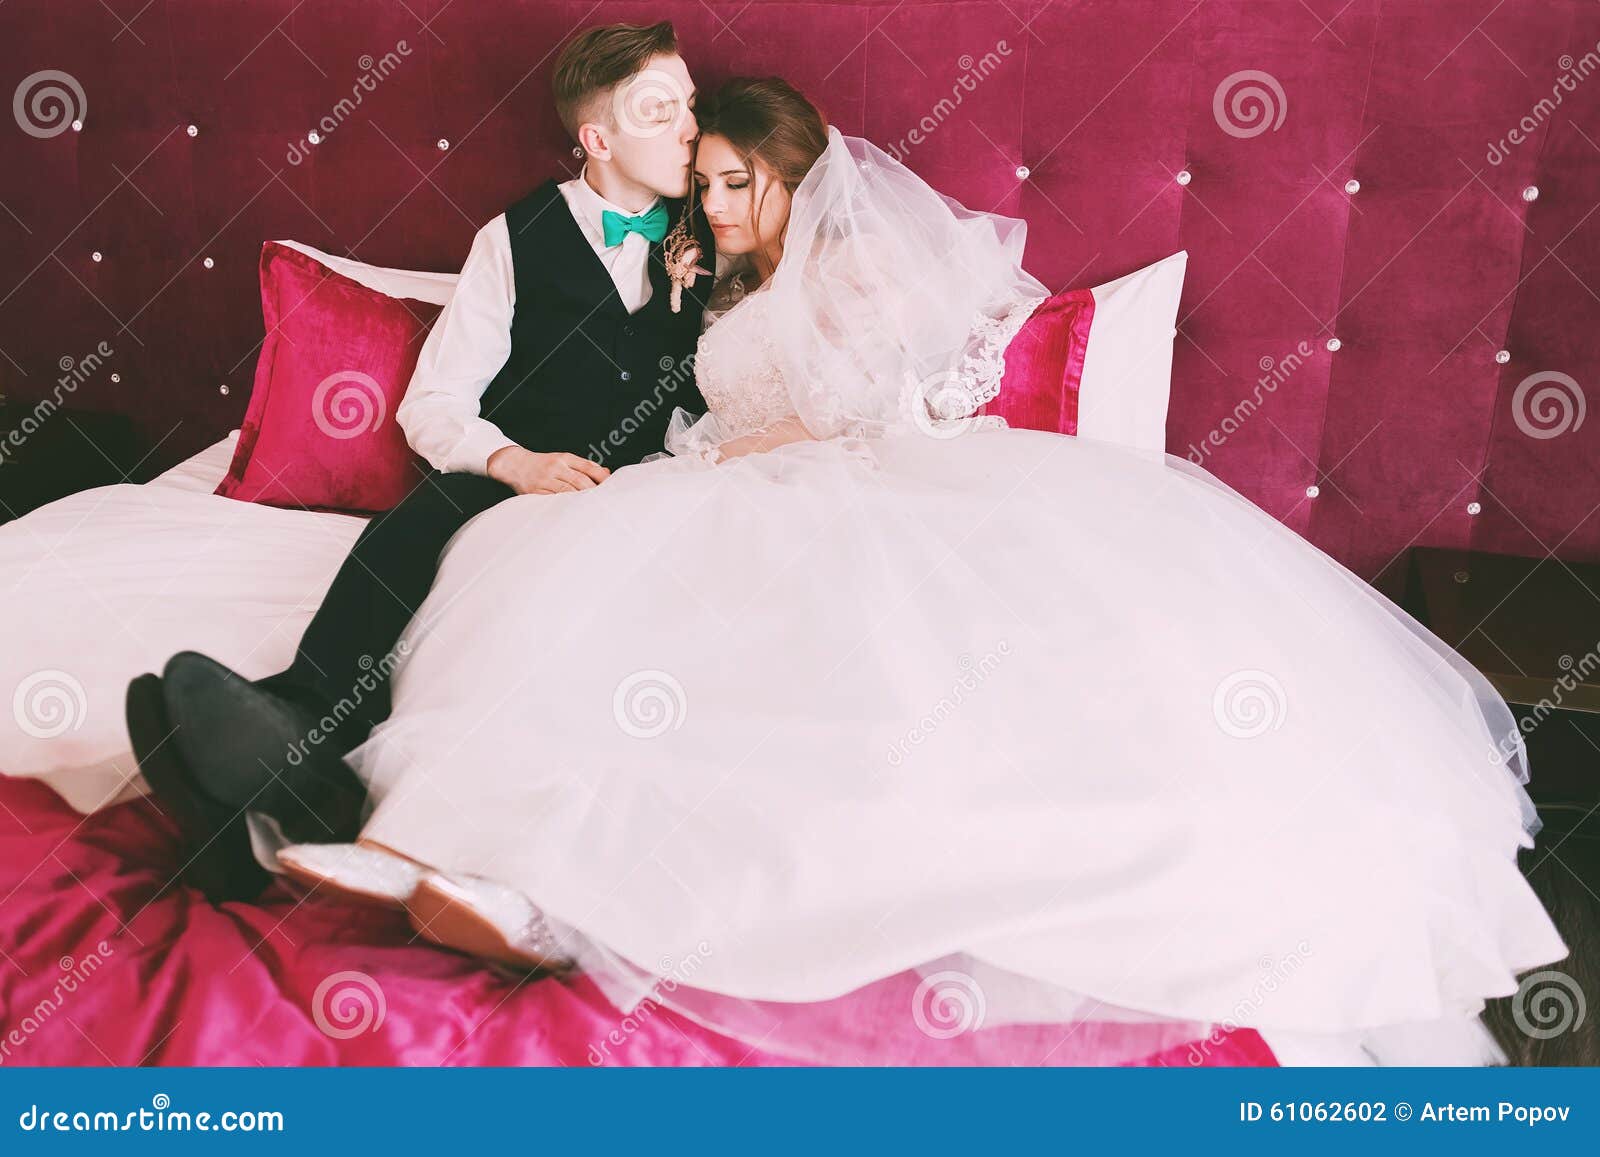 躺在白床上的同性恋同性伴侣 库存图片. 图片 包括有 亲吻, 男性, 同性恋, 休闲, 拥抱, 淫荡, 位于 - 192329989